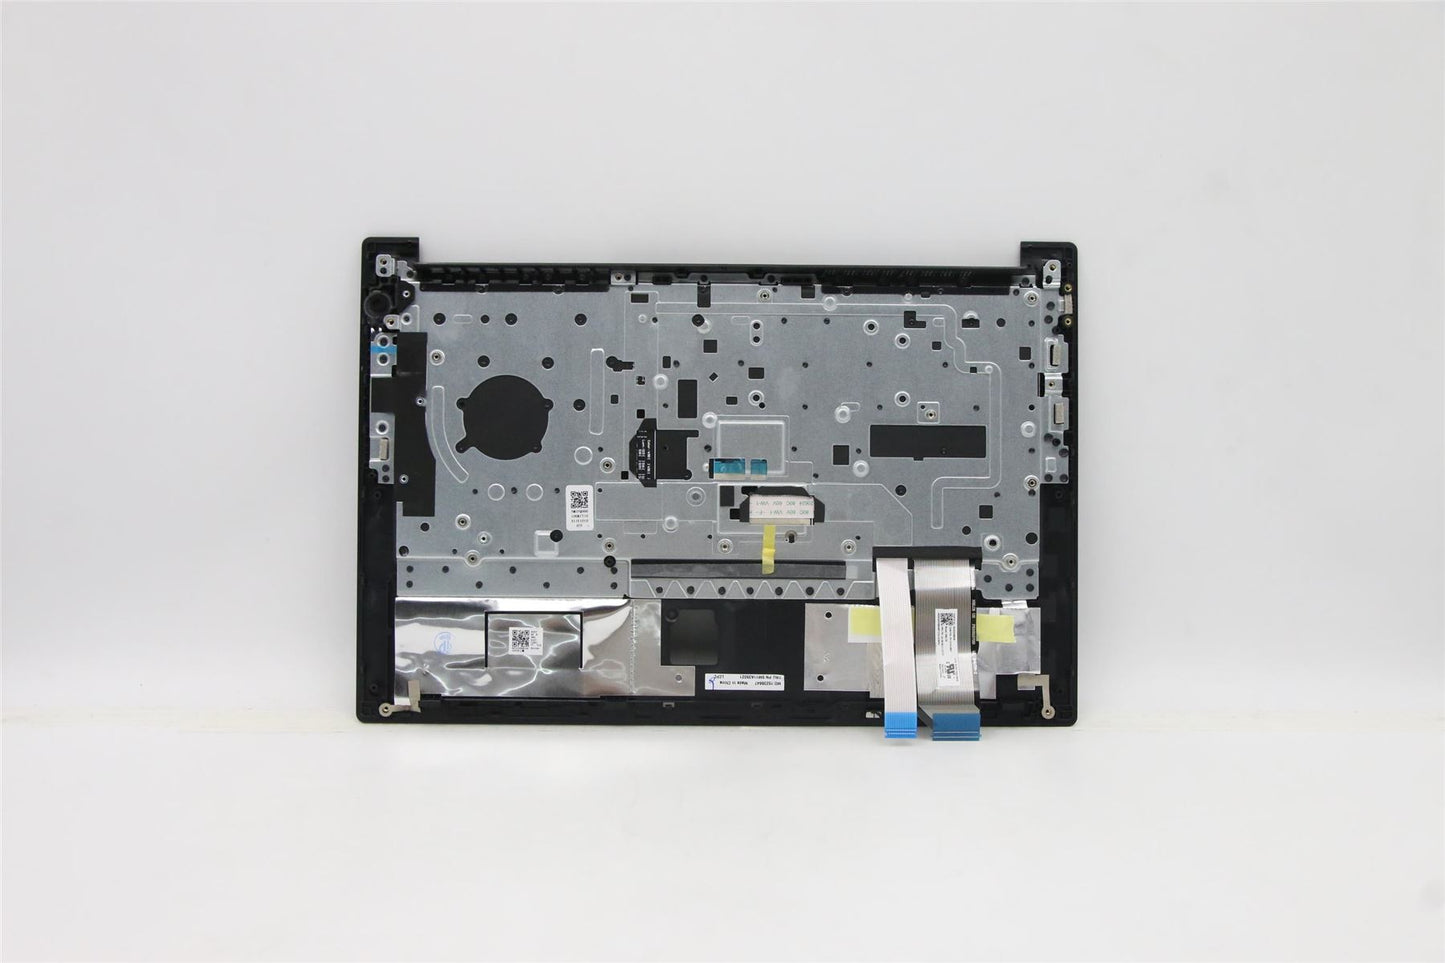 Lenovo ThinkPad E14 Gen 2 Handauflagenabdeckung Tastatur US Europa Schwarz mit Hintergrundbeleuchtung 5M11A35021